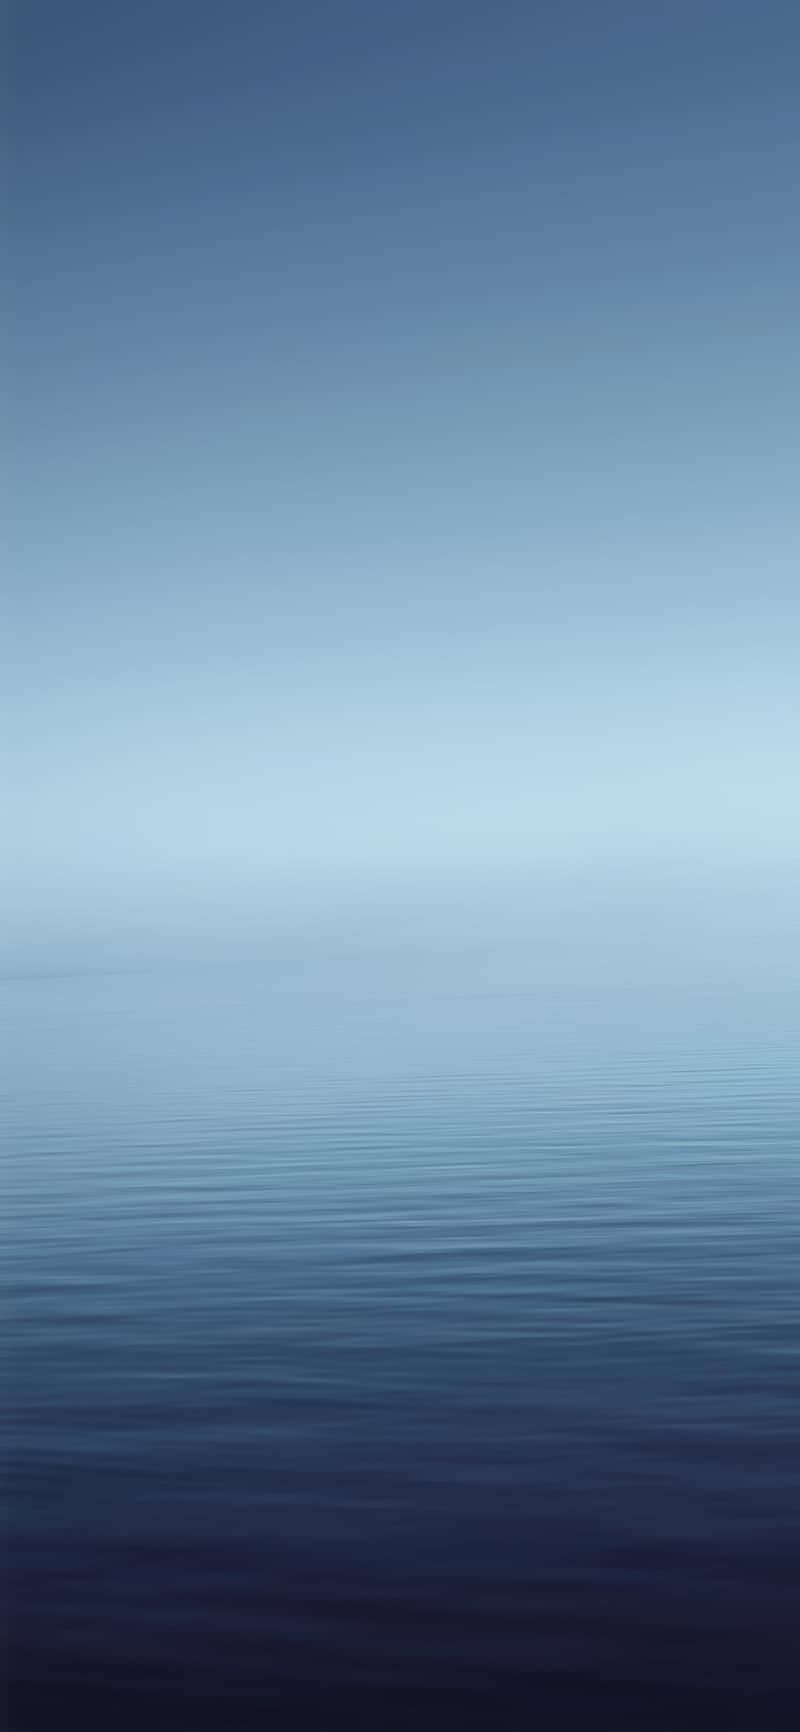 iPhone X Original Blue Sea Wallpaper